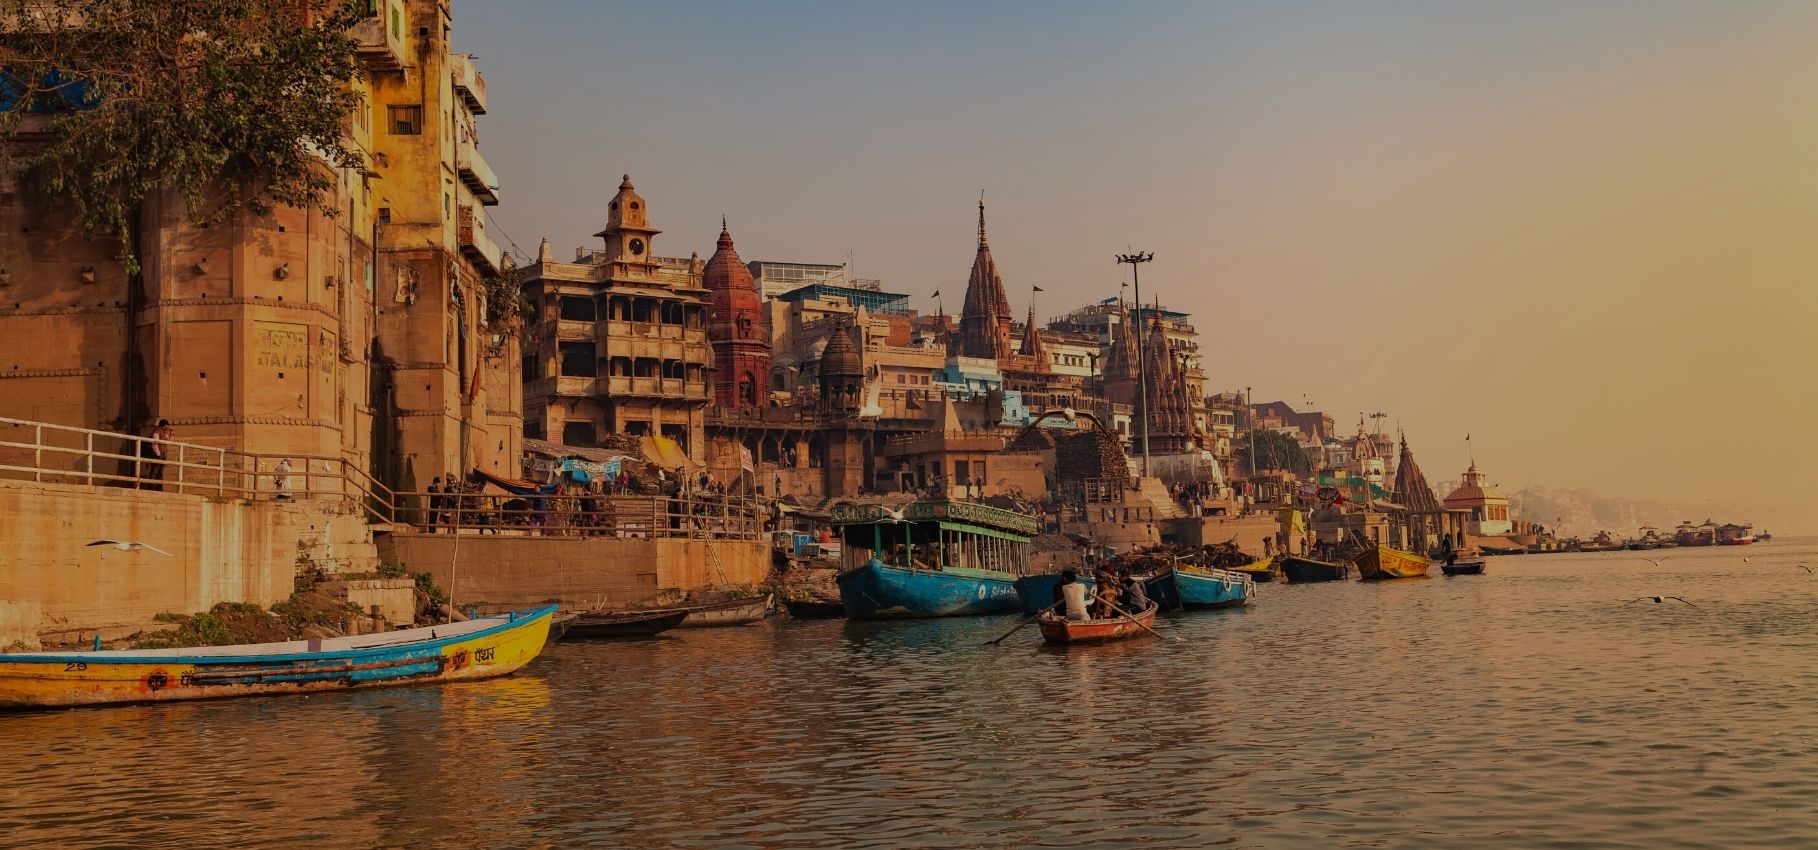 Places to visit in Varanasi, India